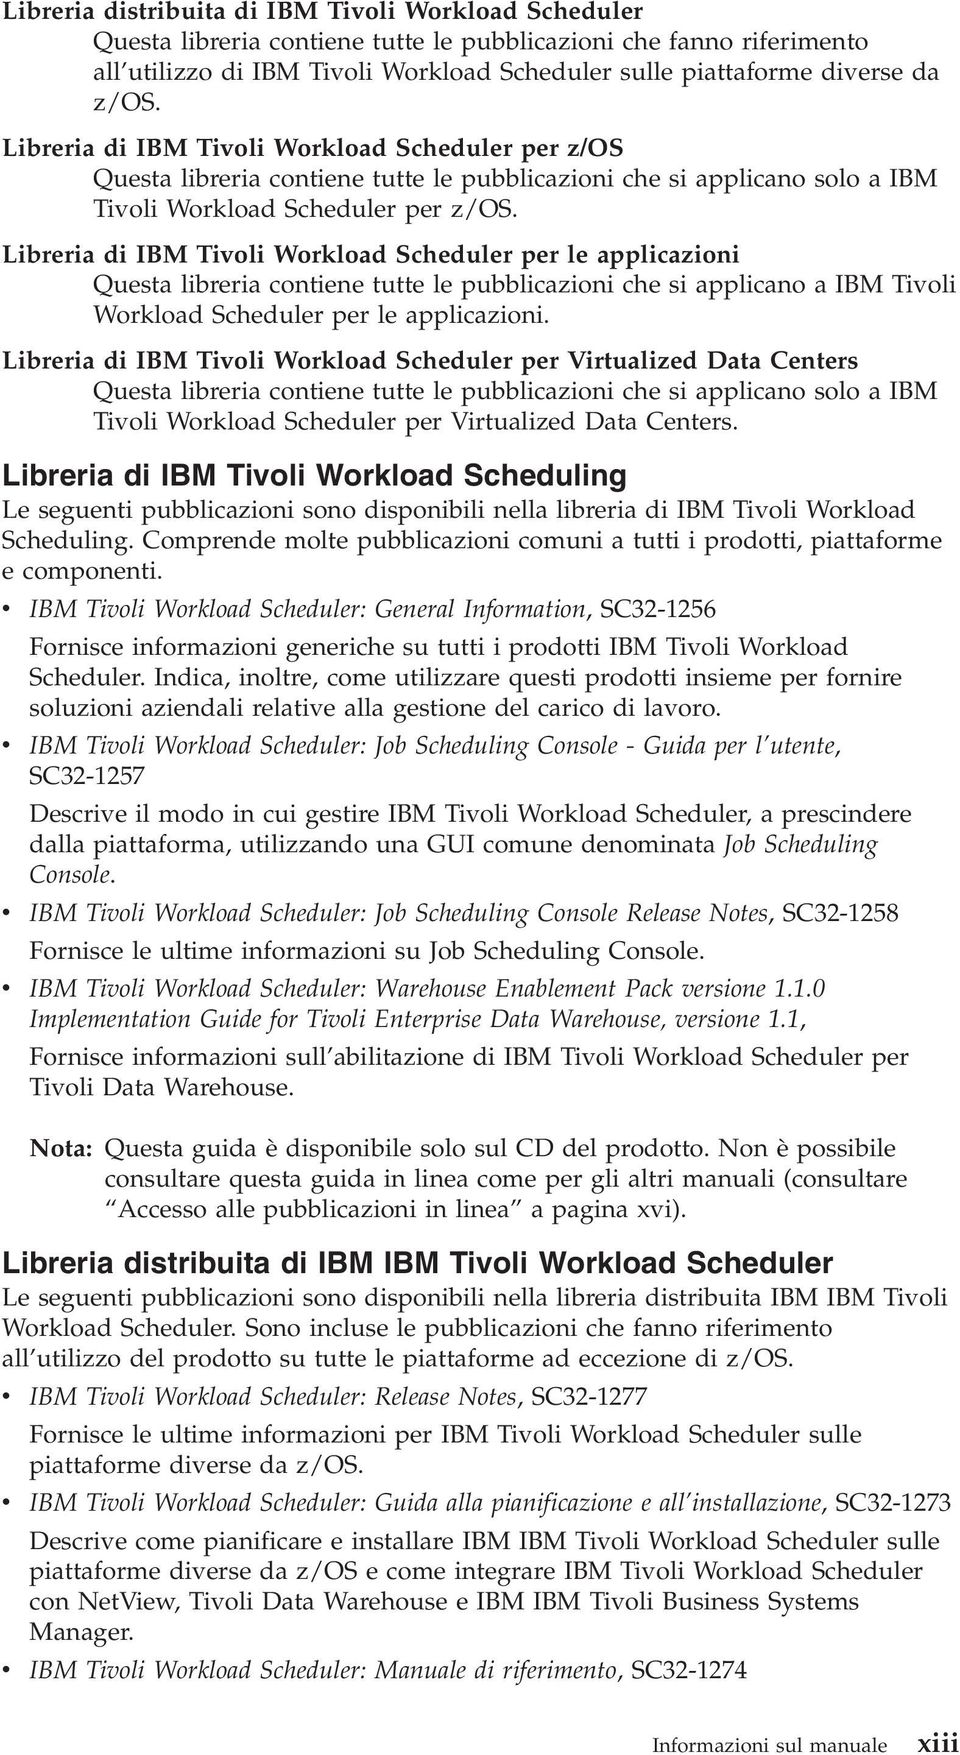 Libreria di IBM Tivoli Workload Scheduler per le applicazioni Questa libreria contiene tutte le pubblicazioni che si applicano a IBM Tivoli Workload Scheduler per le applicazioni.